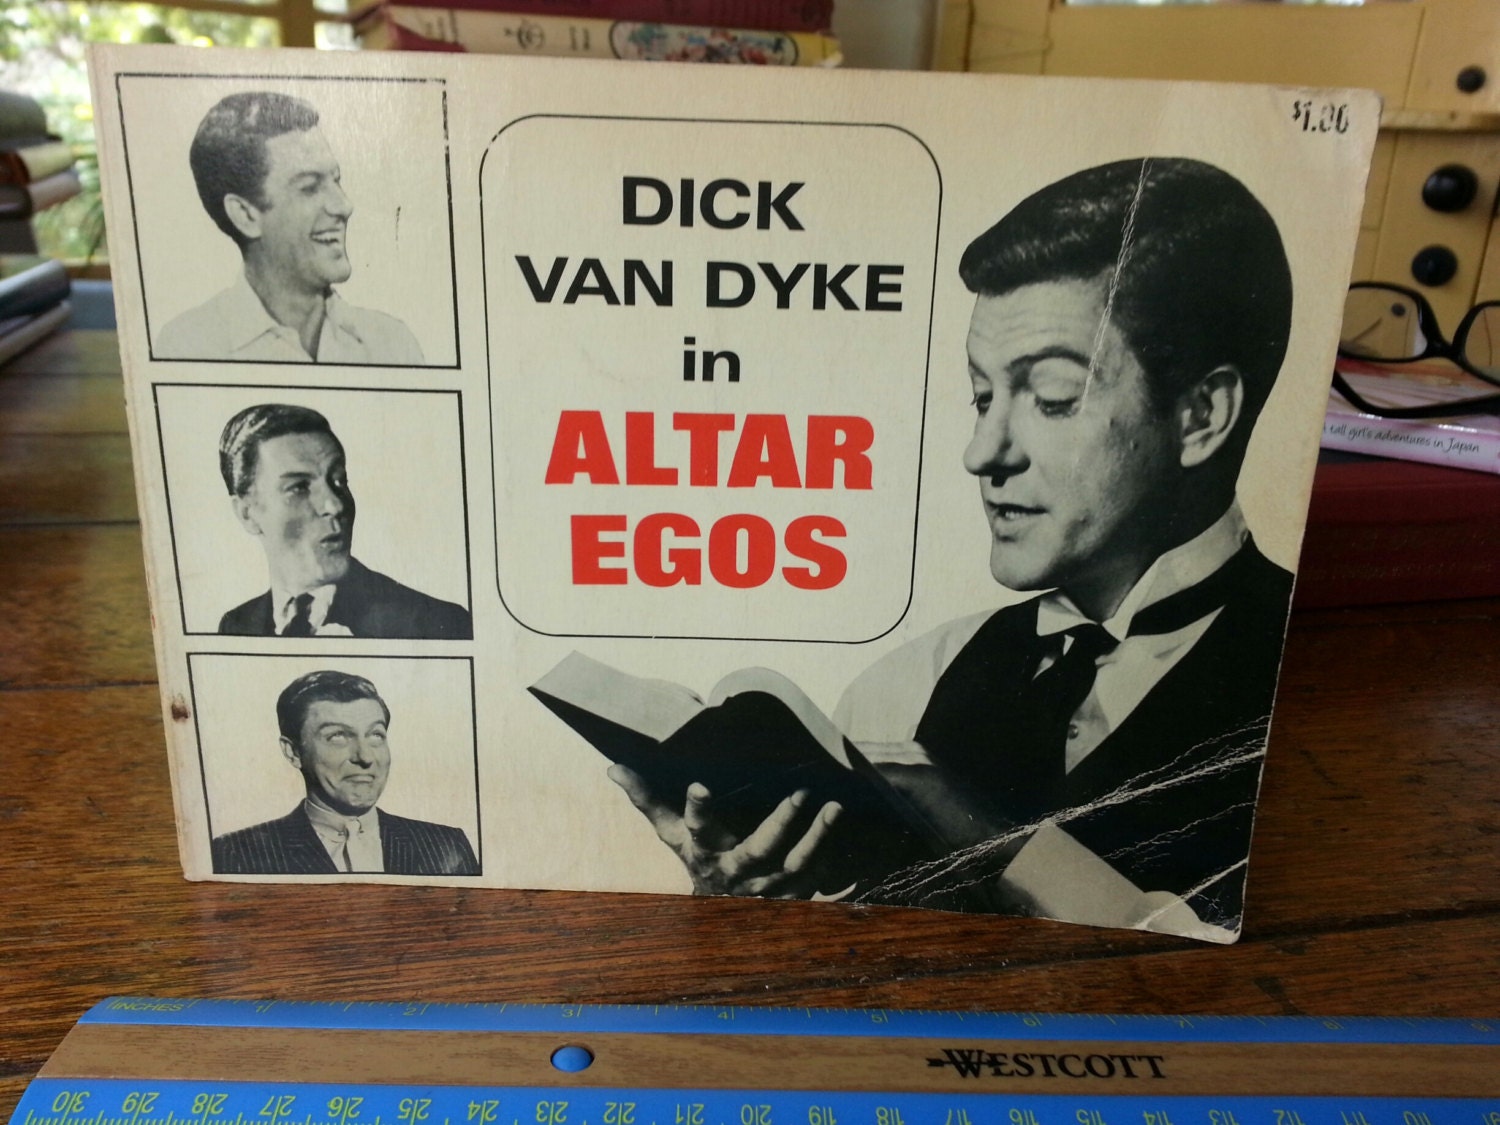 Altar egos Dick Van Dyke